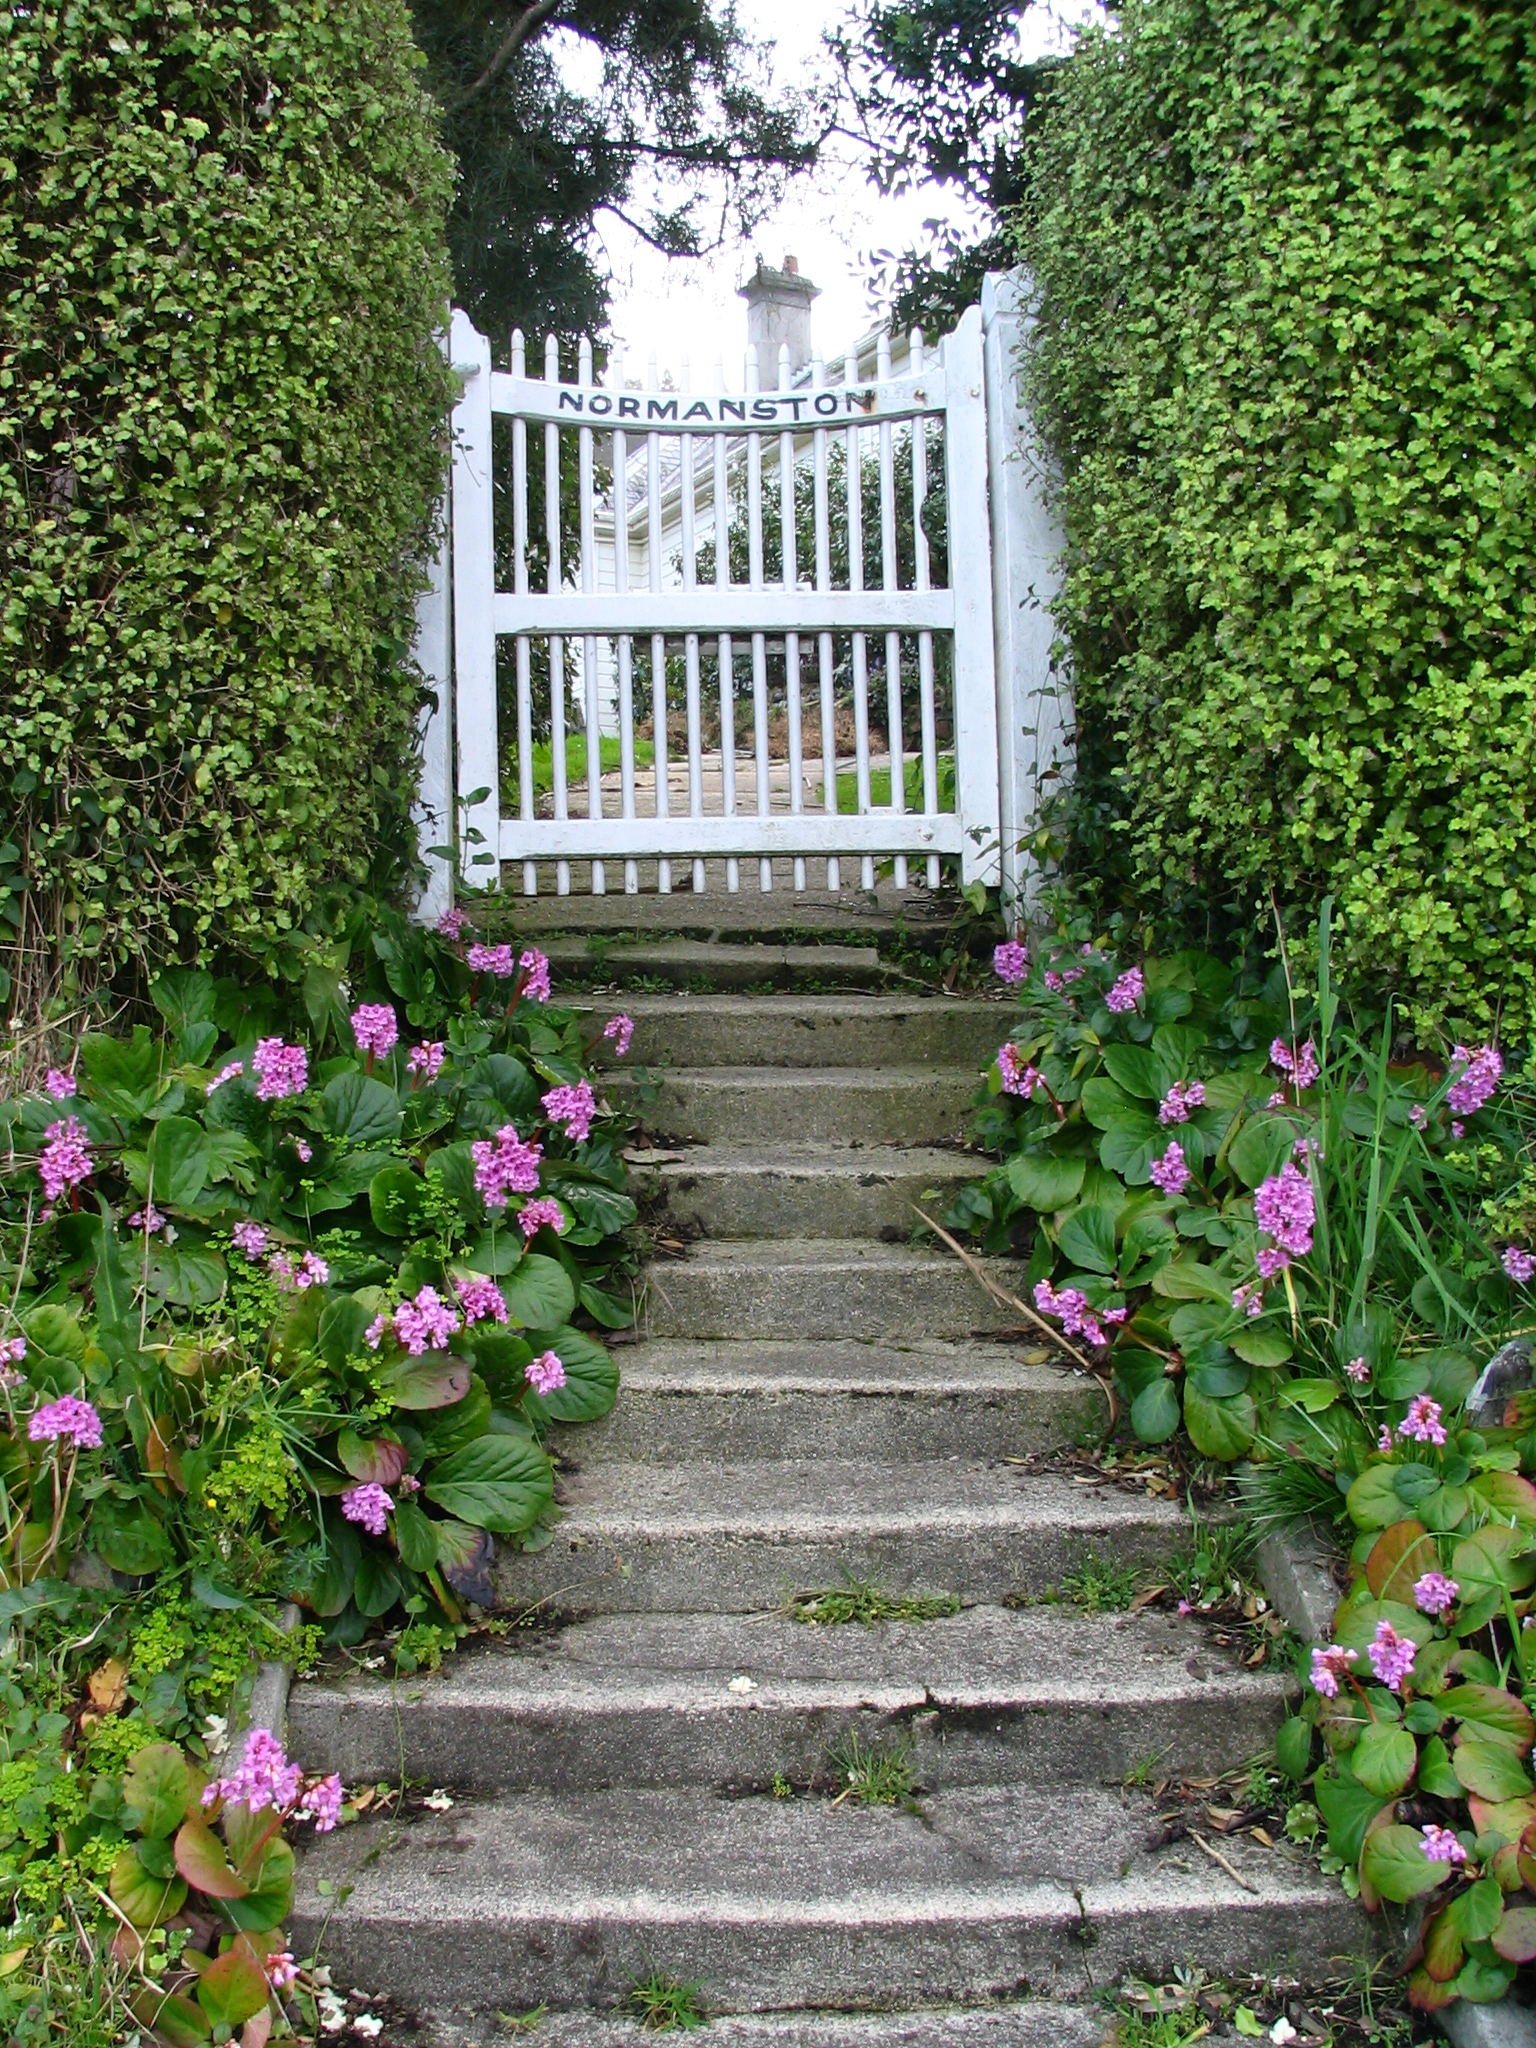 Un portillon est une petite porte d'extérieur. Ici un portillon donnant accès à un jardin. © Benchill, CC BY SA 3.0, Wikipedia Commons